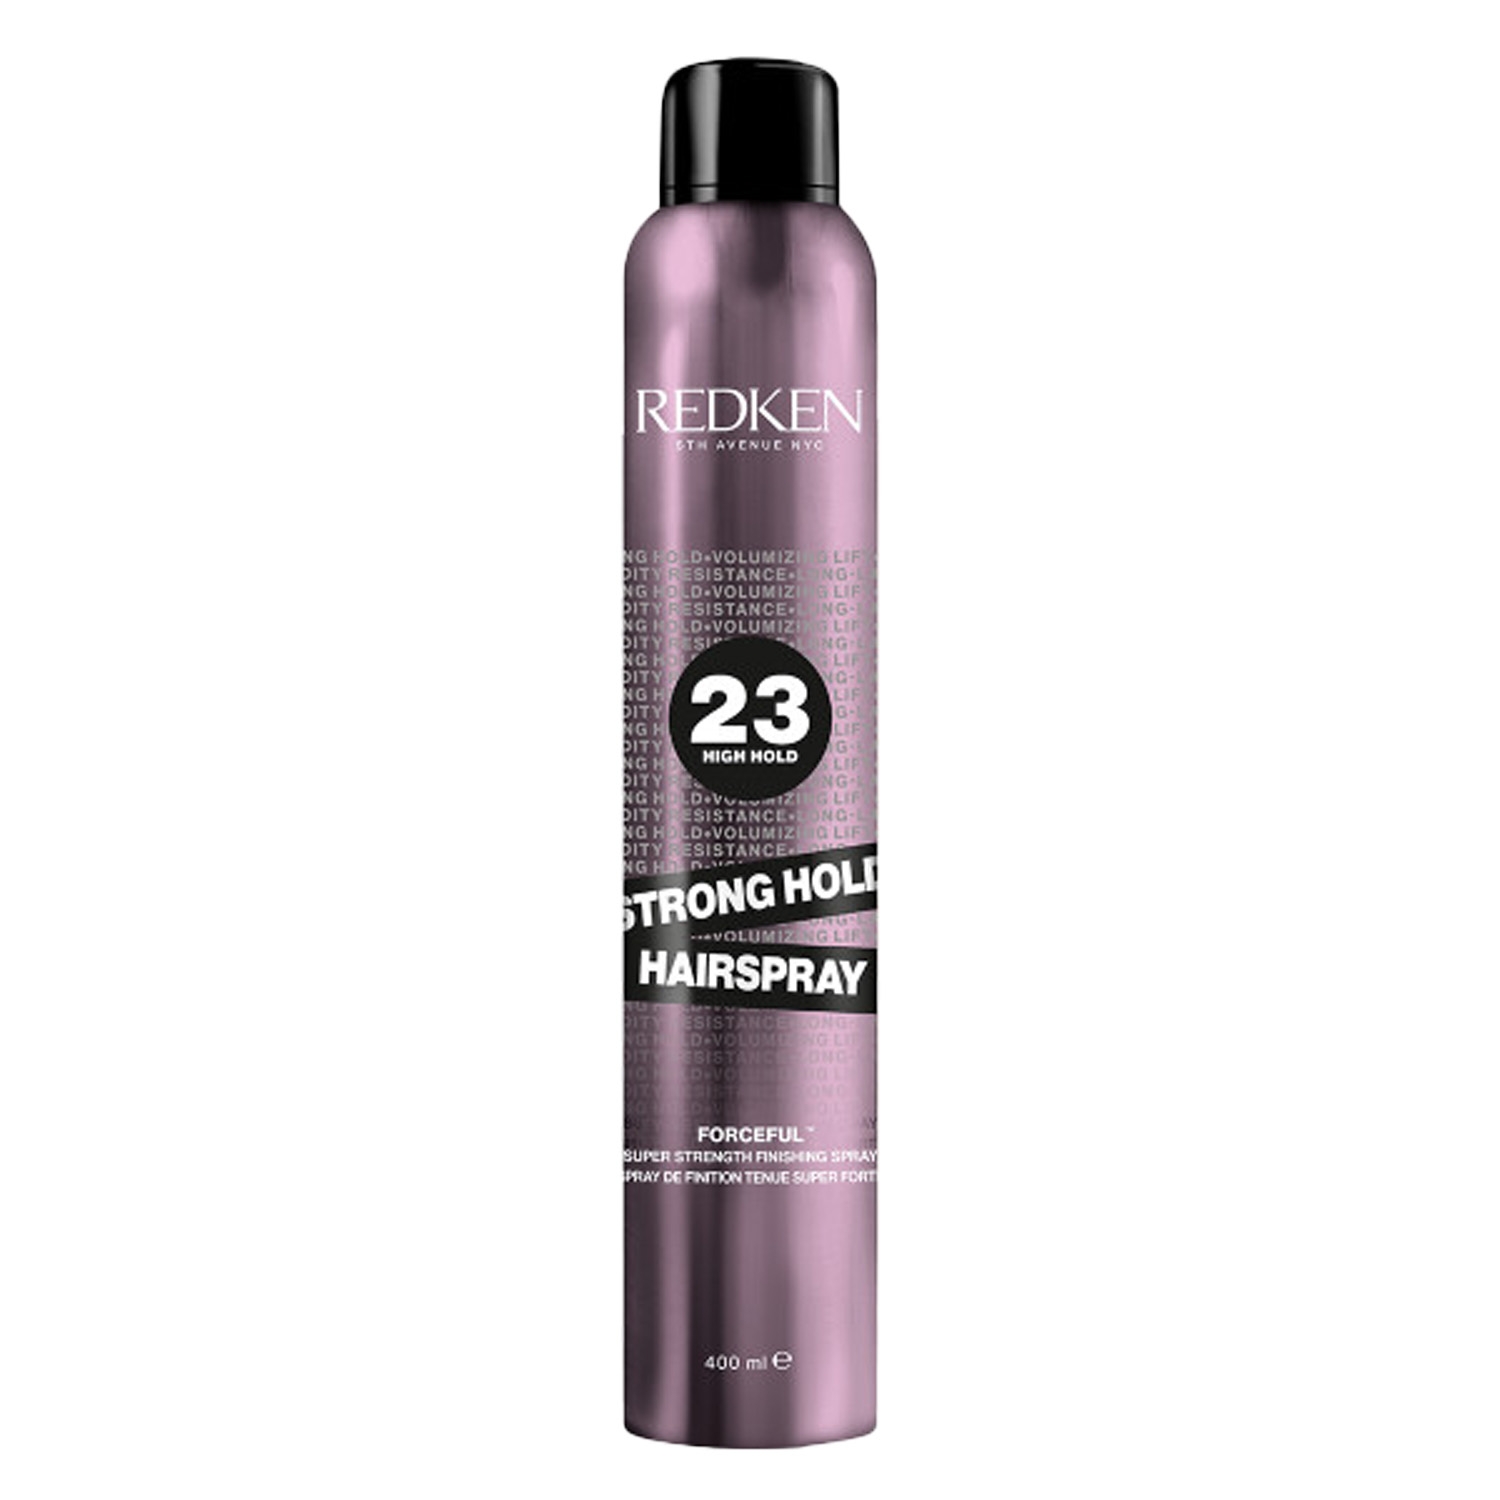 Produktbild von Redken Styling - Strong Hold Hairspray